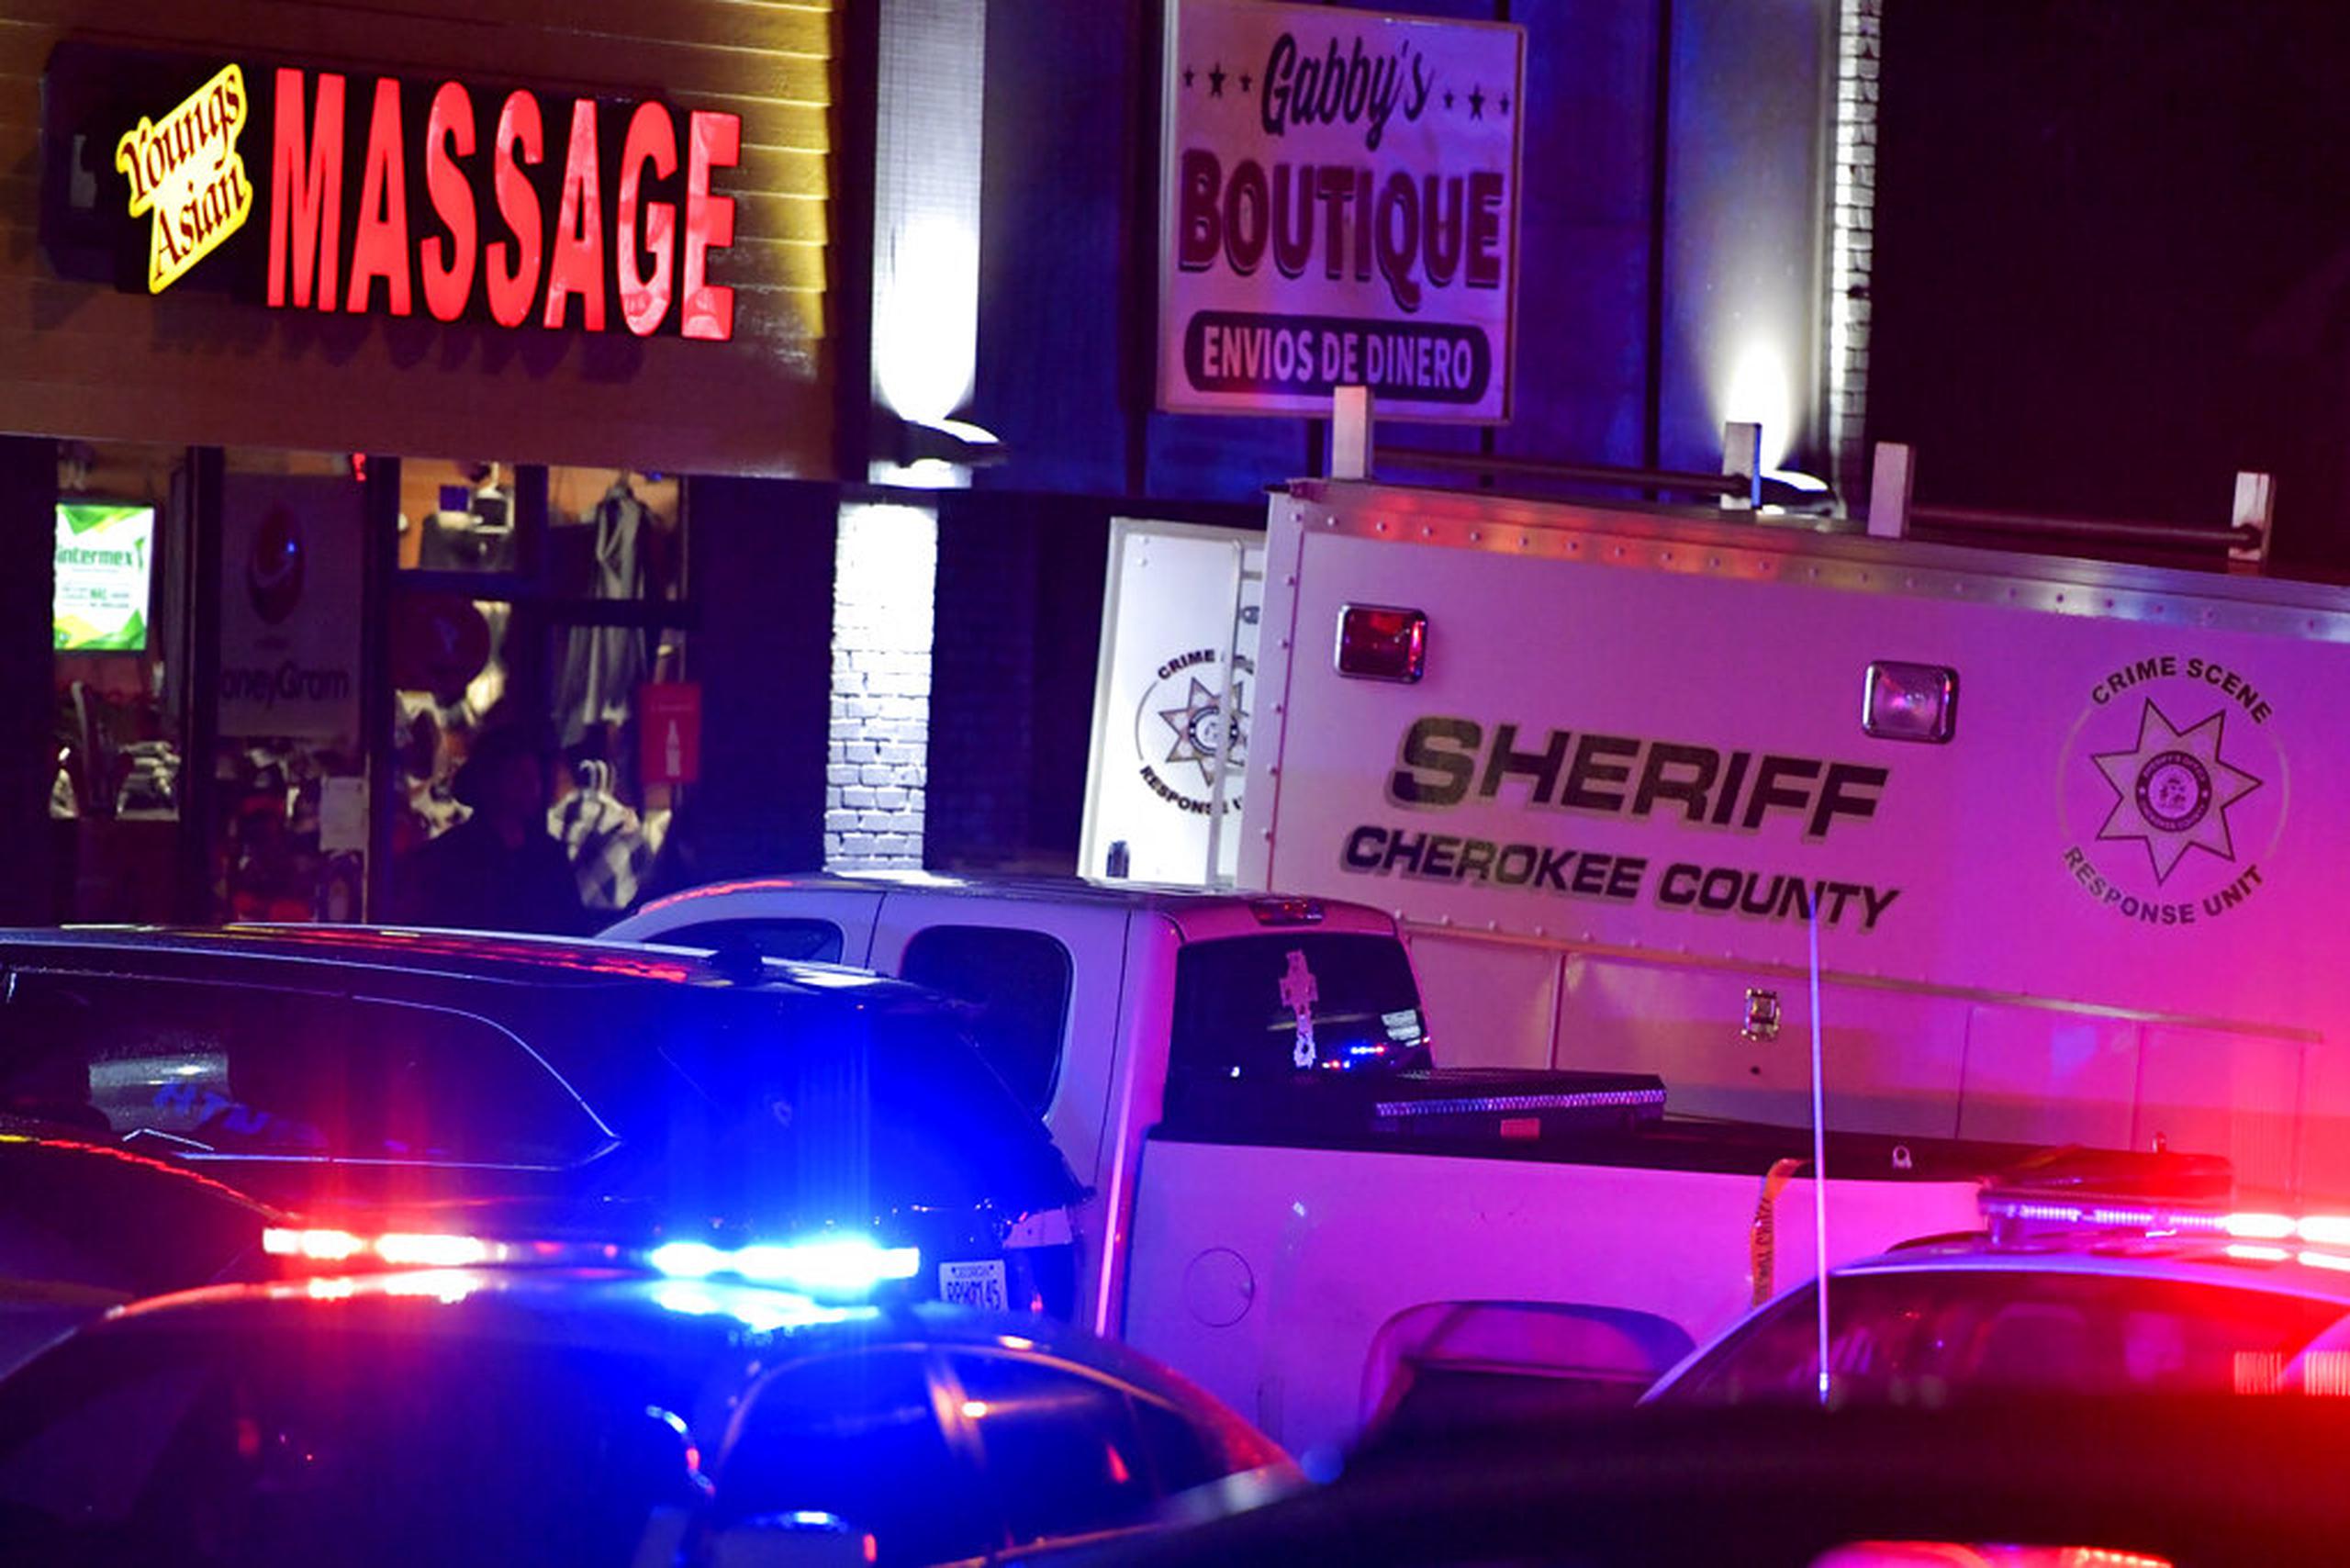 Los tiroteos comenzaron alrededor de las 5:00 de la tarde de ayer, martes, en Young’s Asian Massage Parlor, ubicado en un centro comercial a 30 millas al norte de Atlanta.